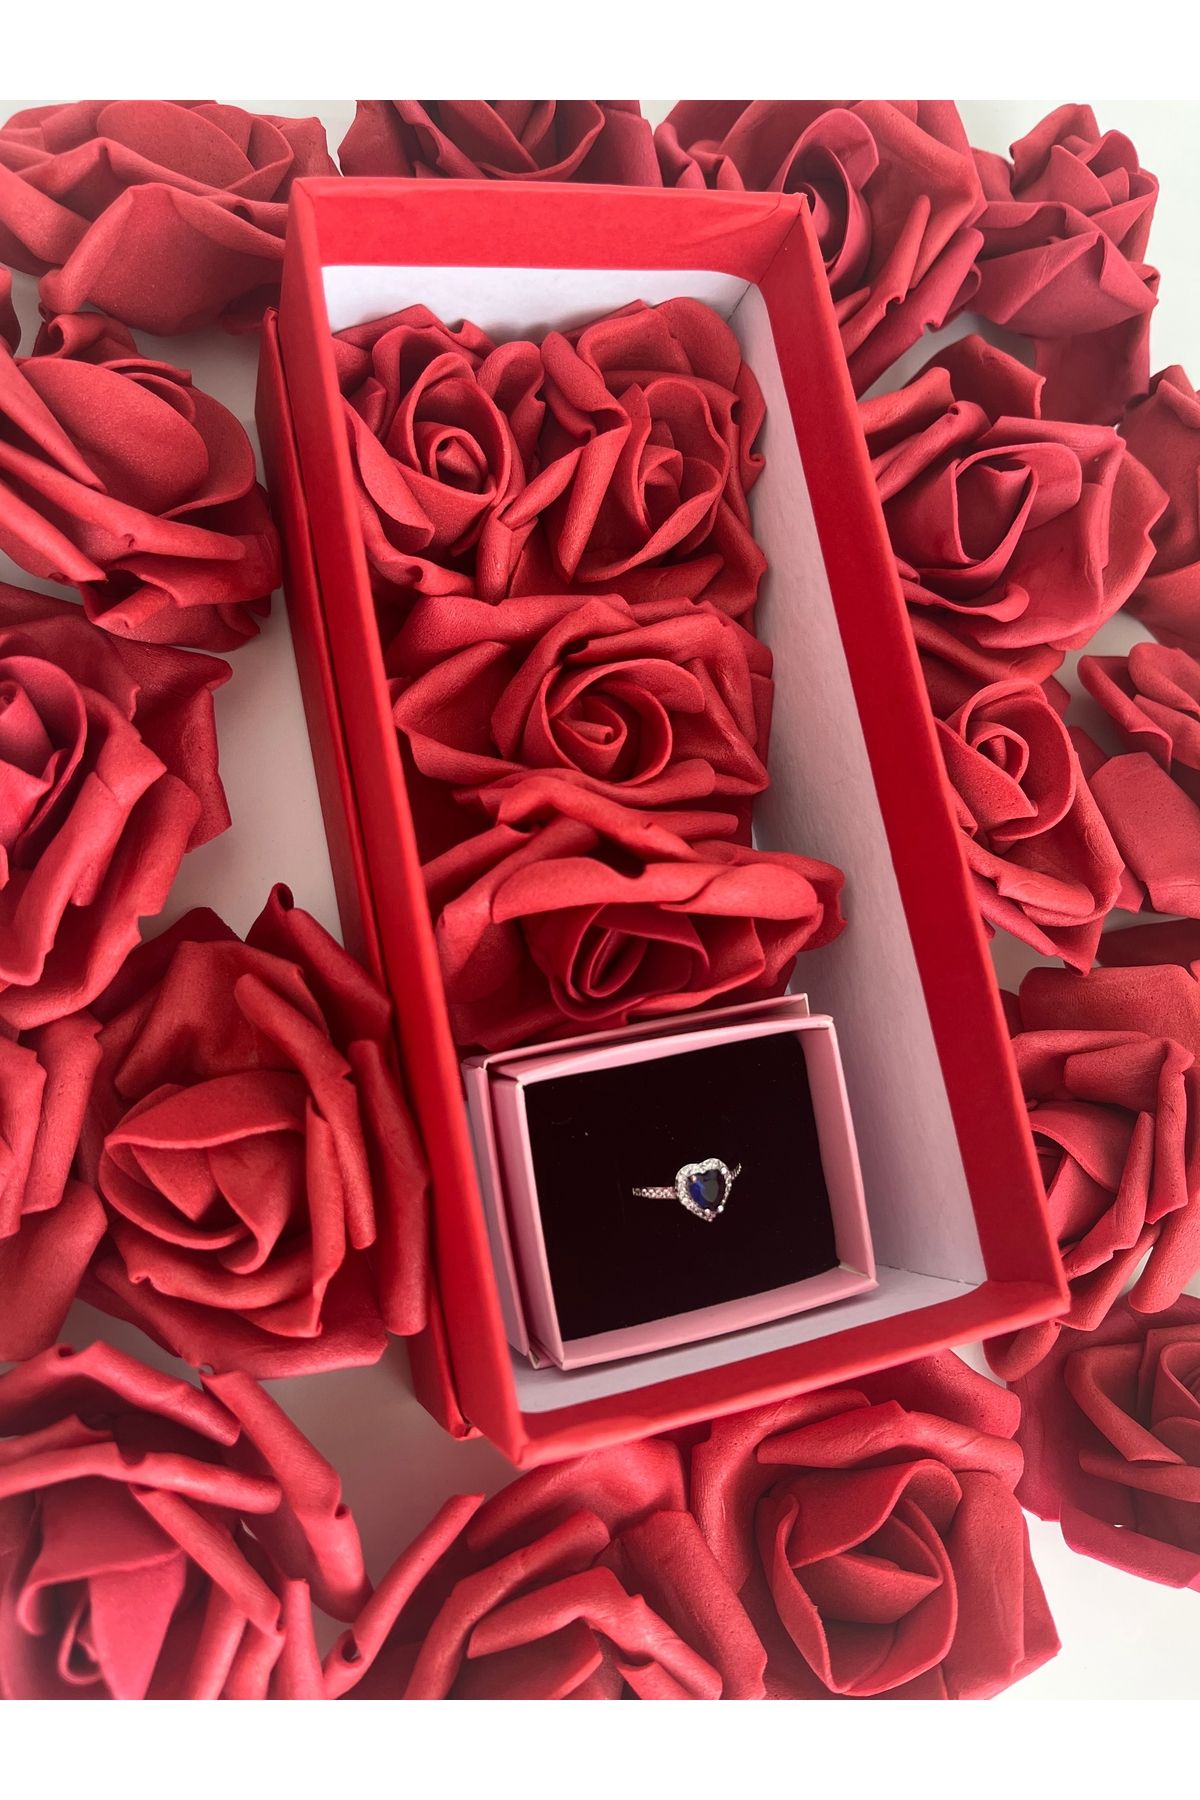 pulsar star Romantik güllü hediye kutusunda kalpli yüzük sevgiliye hediye